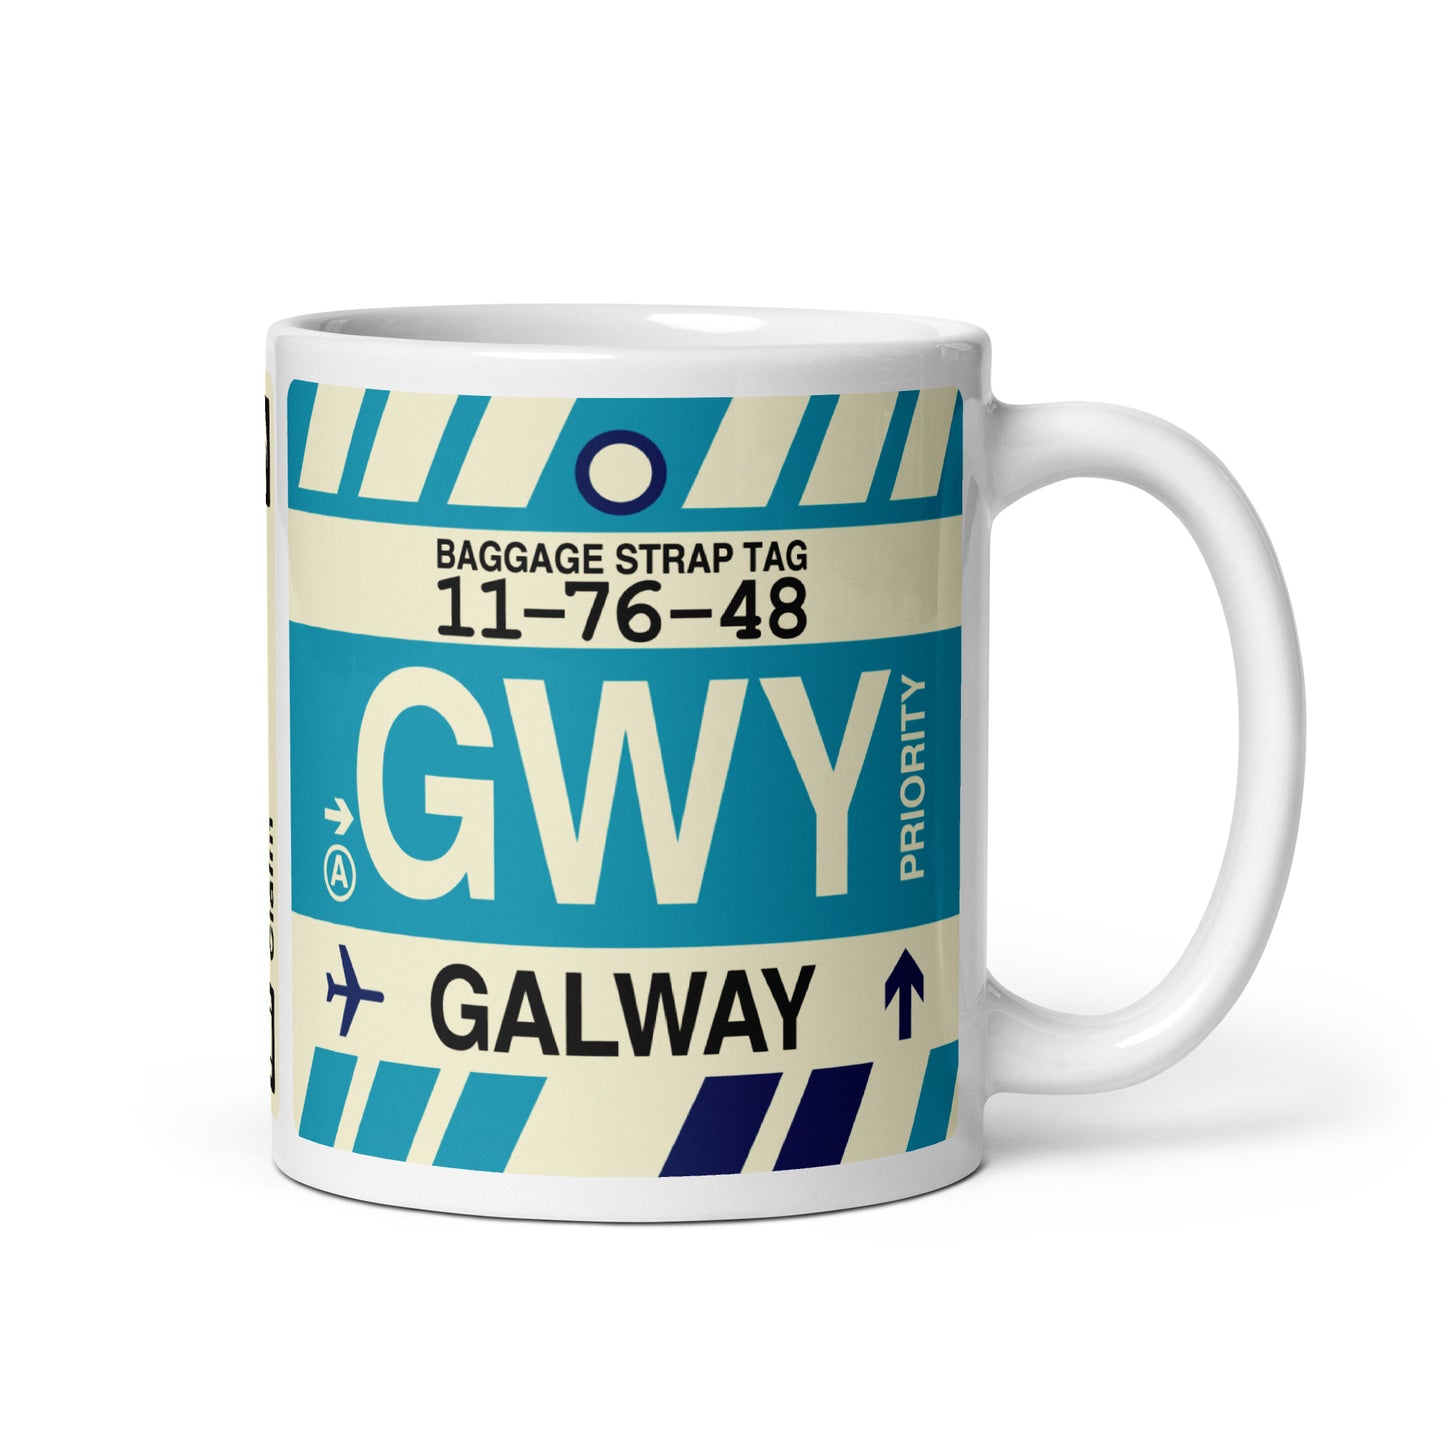 Travel-Themed Coffee Mug • GWY Galway • YHM Designs - Image 01